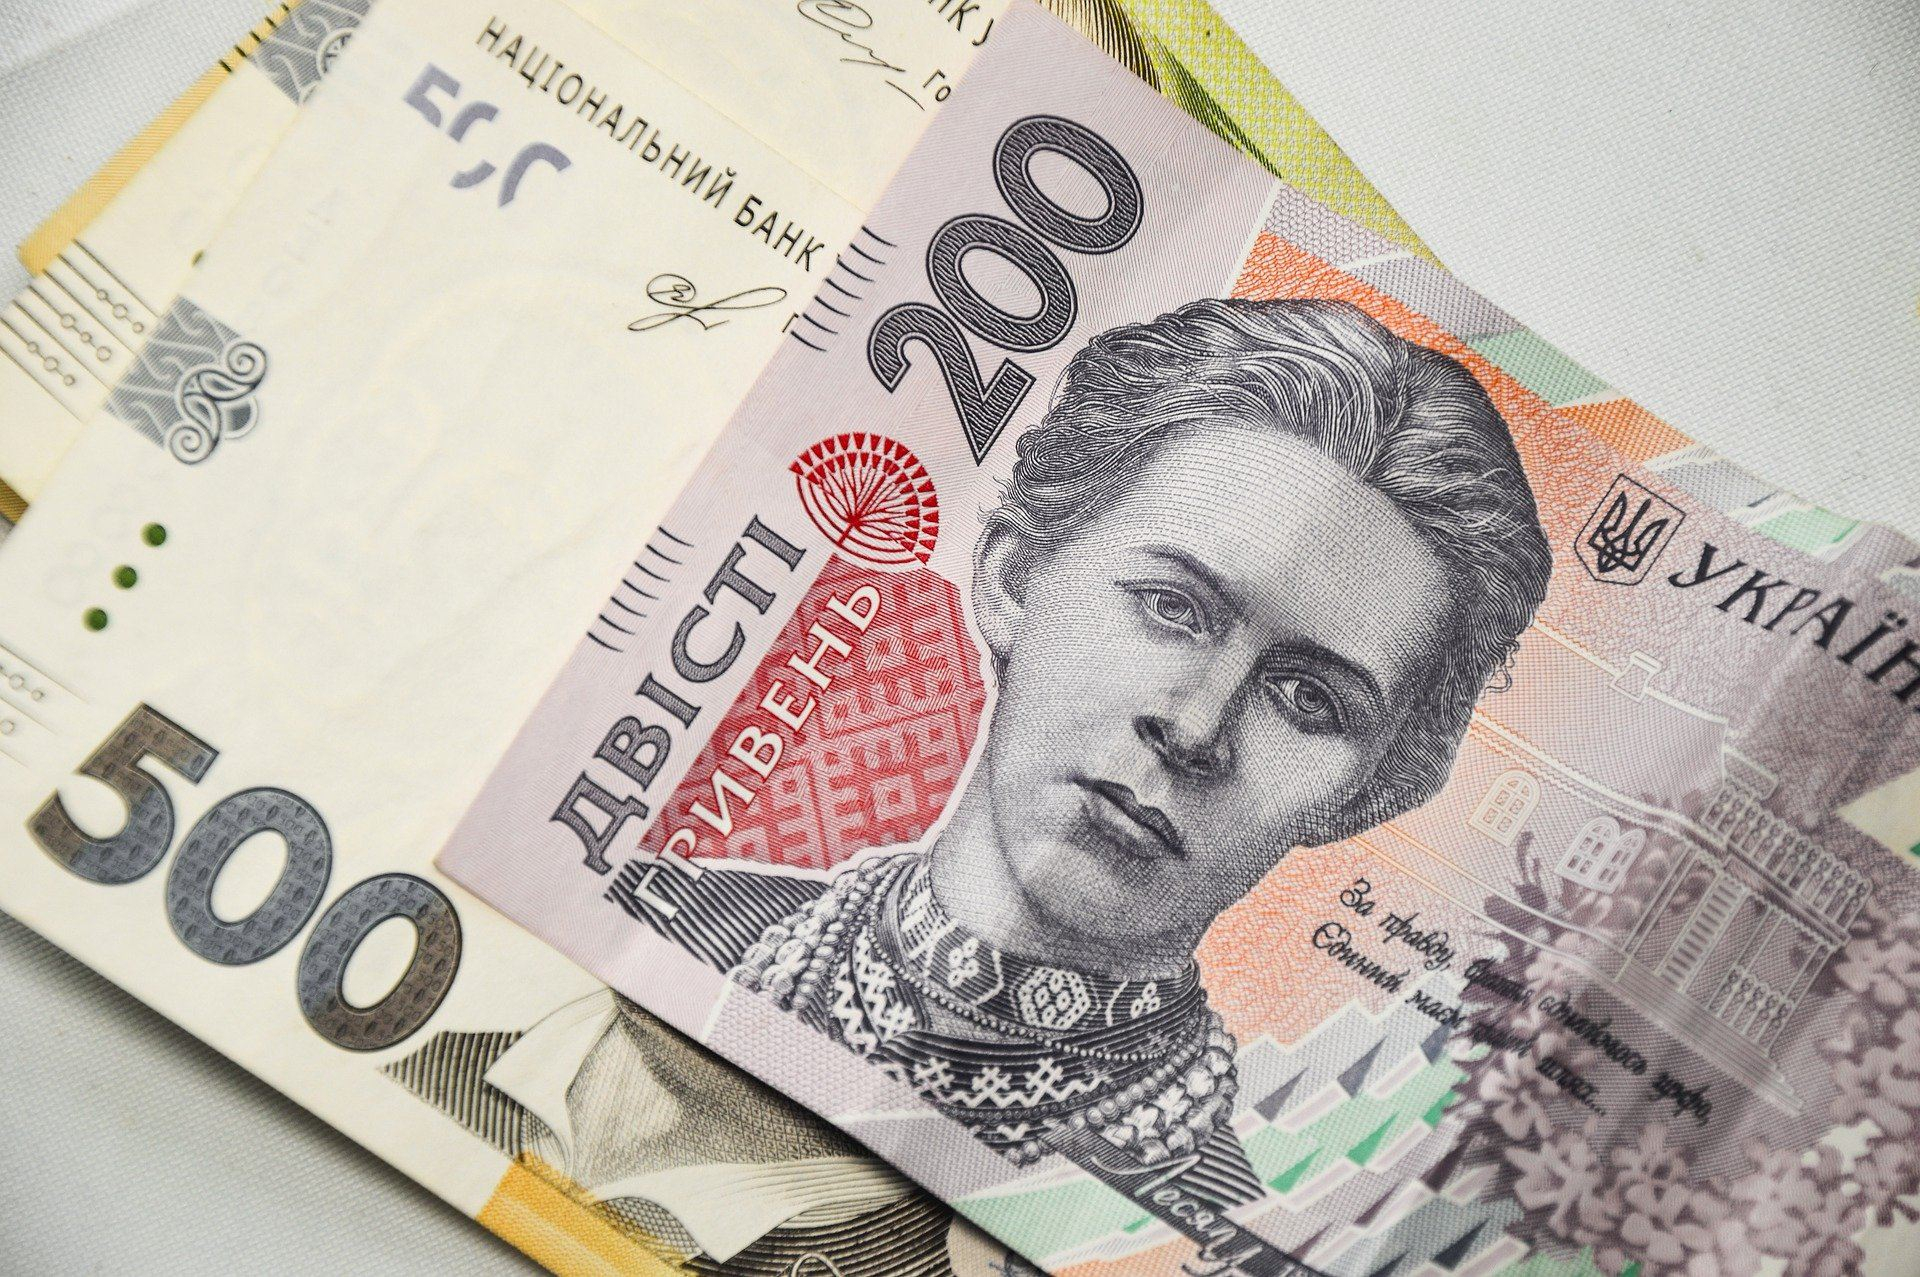 Обов'язкова накопичувальна пенсія: скільки сплачуватимуть працівники та роботодавці - Економічні новини України - Економіка